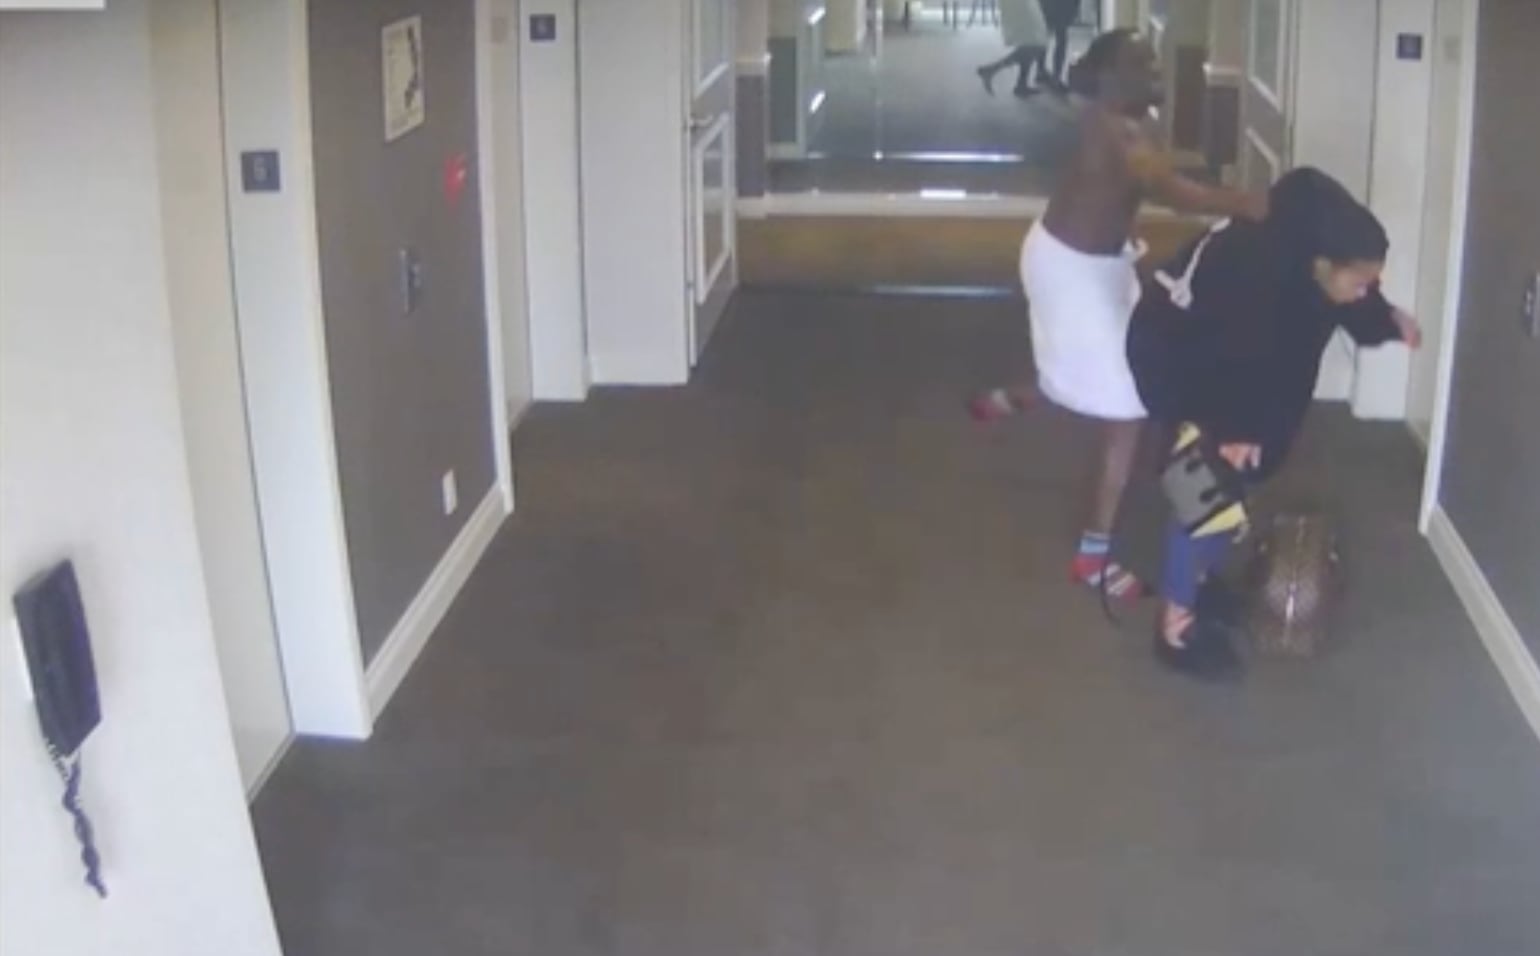 Una grabación muestra a Sean Combs dándole una paliza a su entonces novia, Cassie, en el pasillo de un hotel